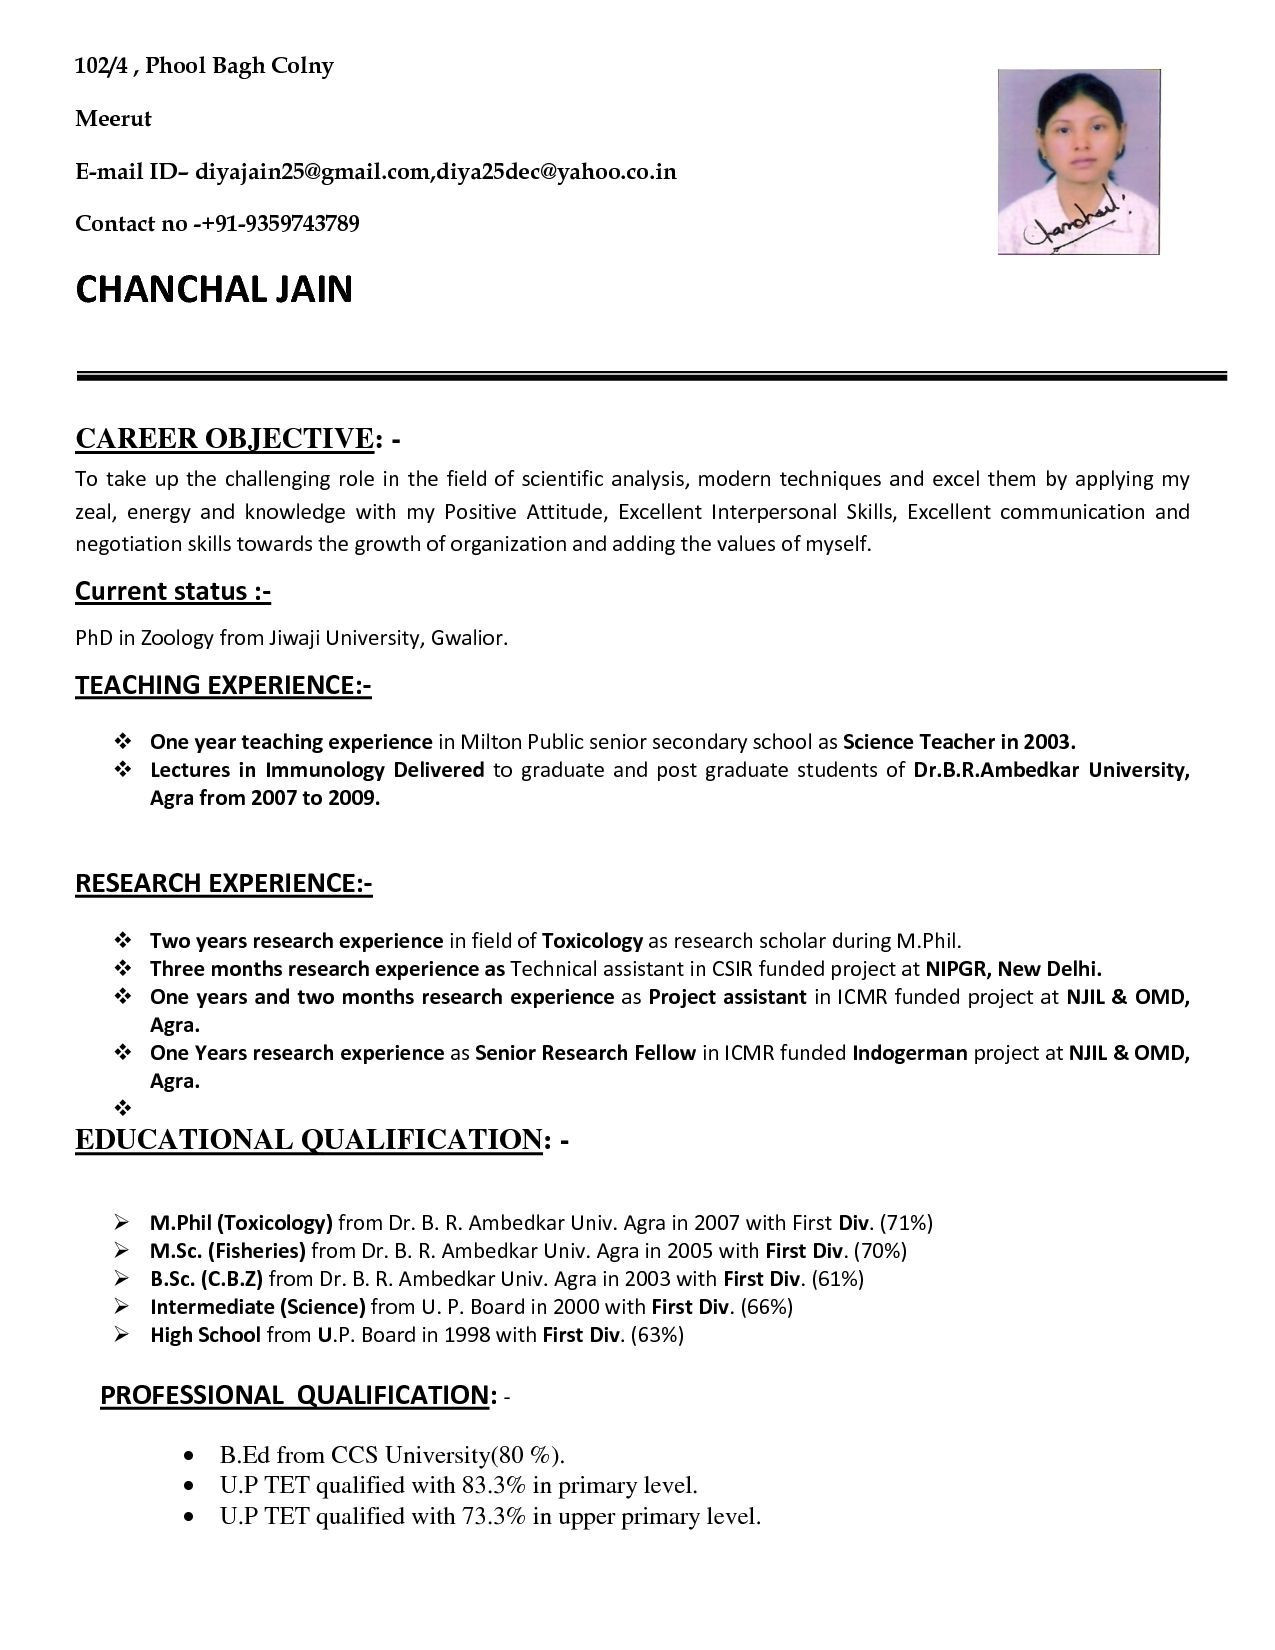 Sample Of Resume for Applying Teaching Job Resume format for School Teacher Job It Cover Letter Sample within …